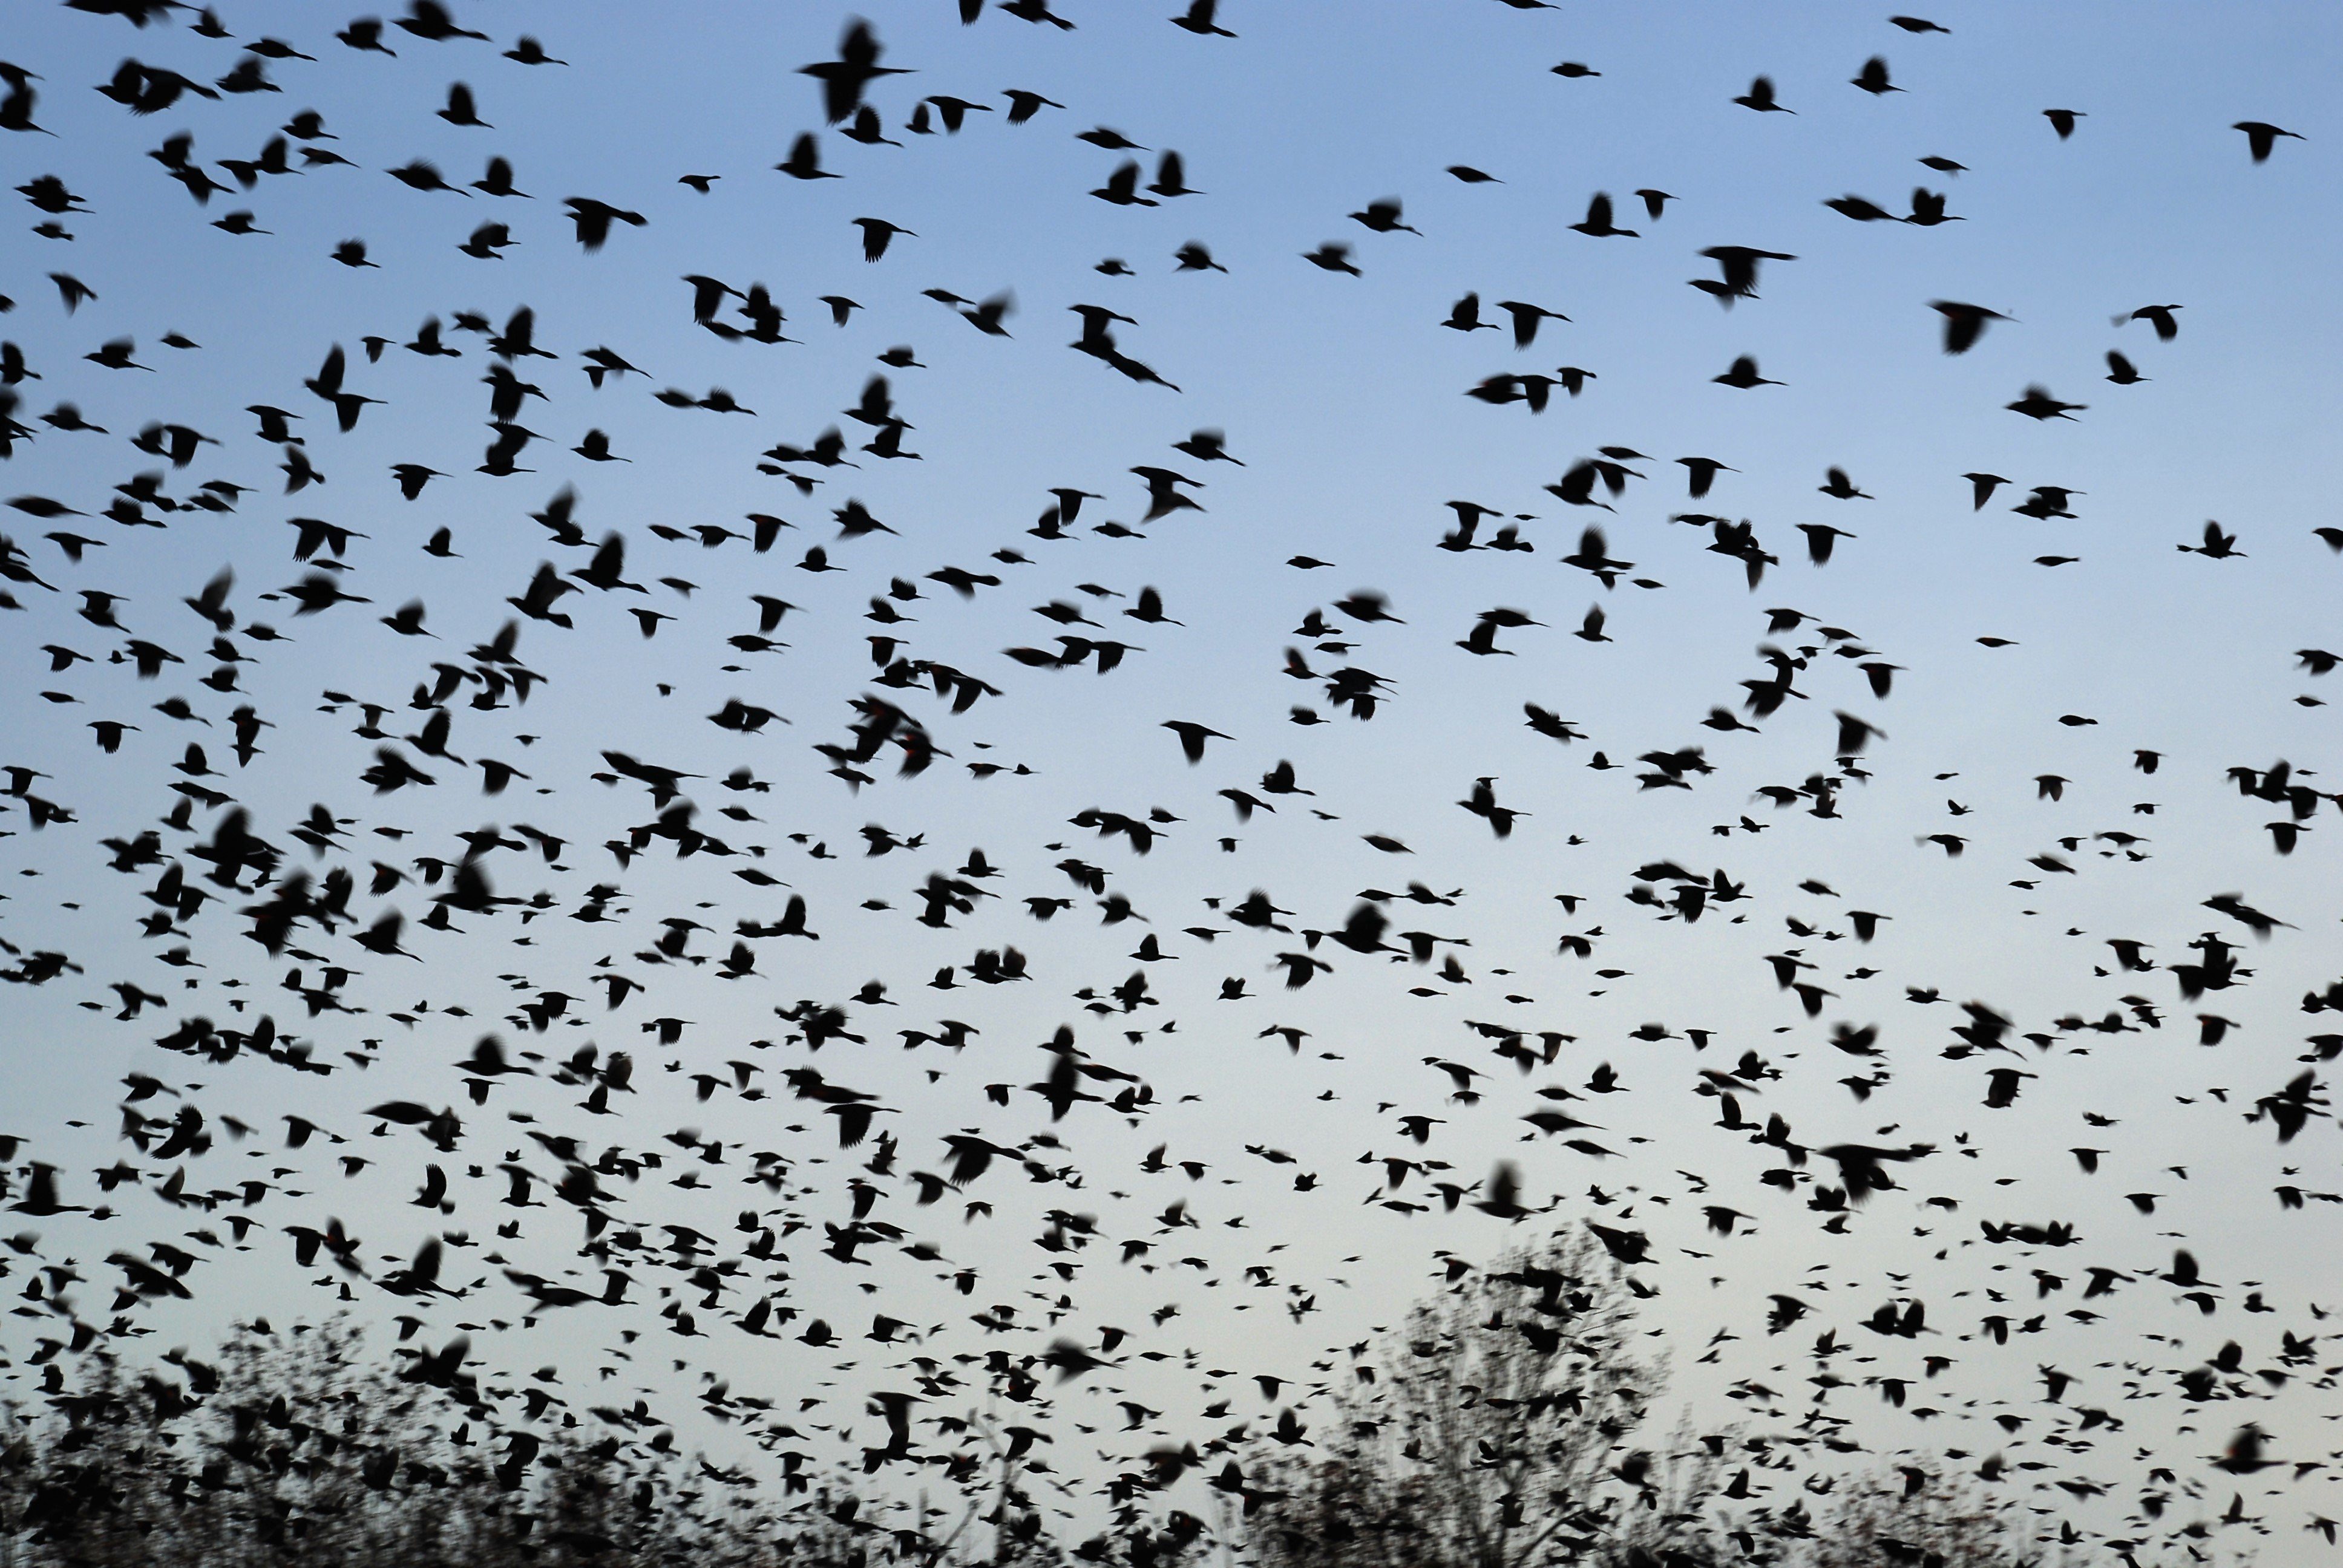 Flock of birds. Стая ворон. Много птиц в небе. Вороны в небе. Стая птиц.